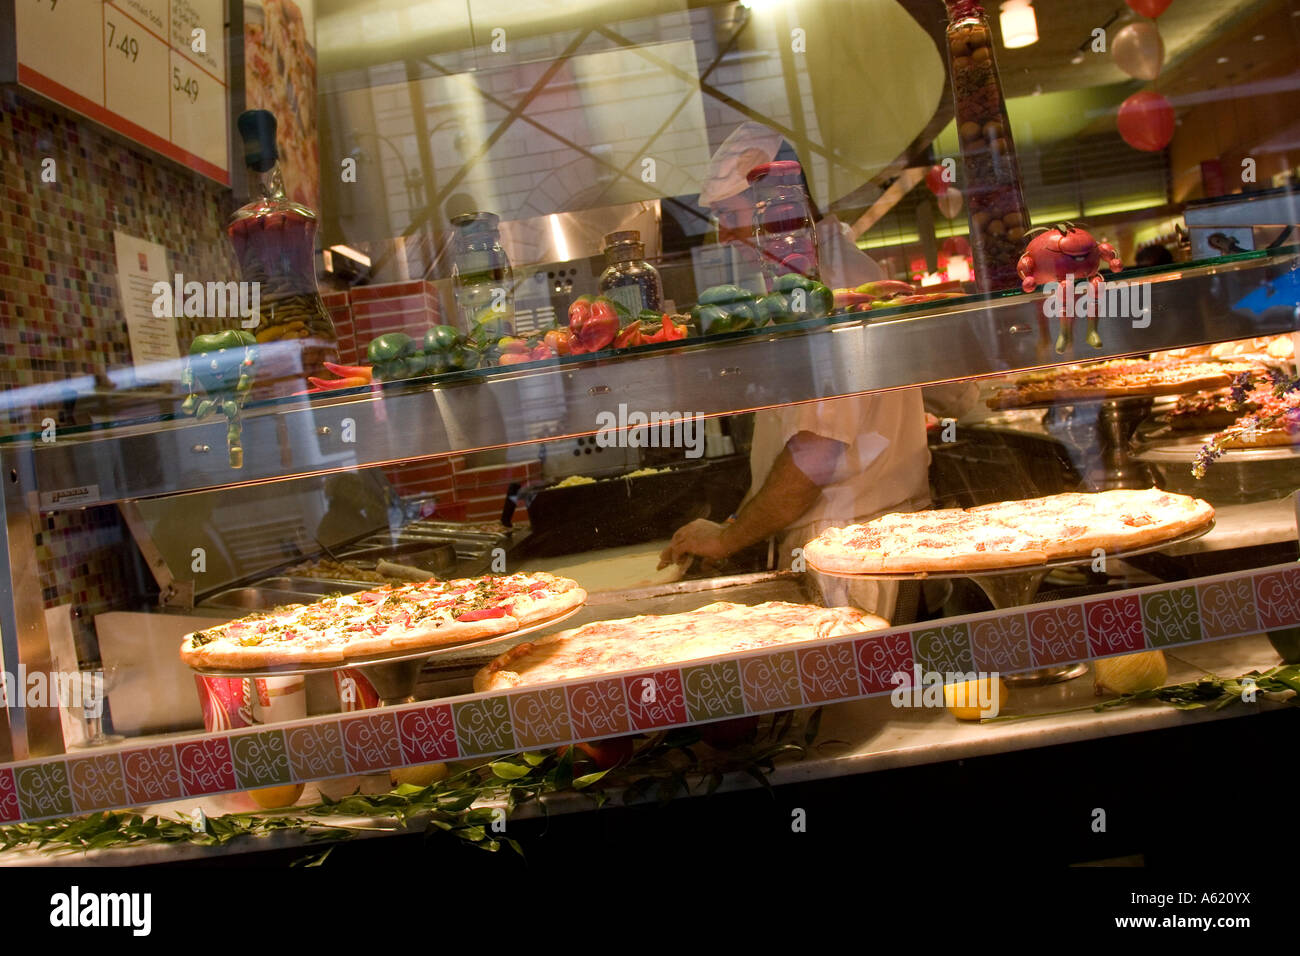 Pizza in pizzaria window New York NY USA Stock Photo